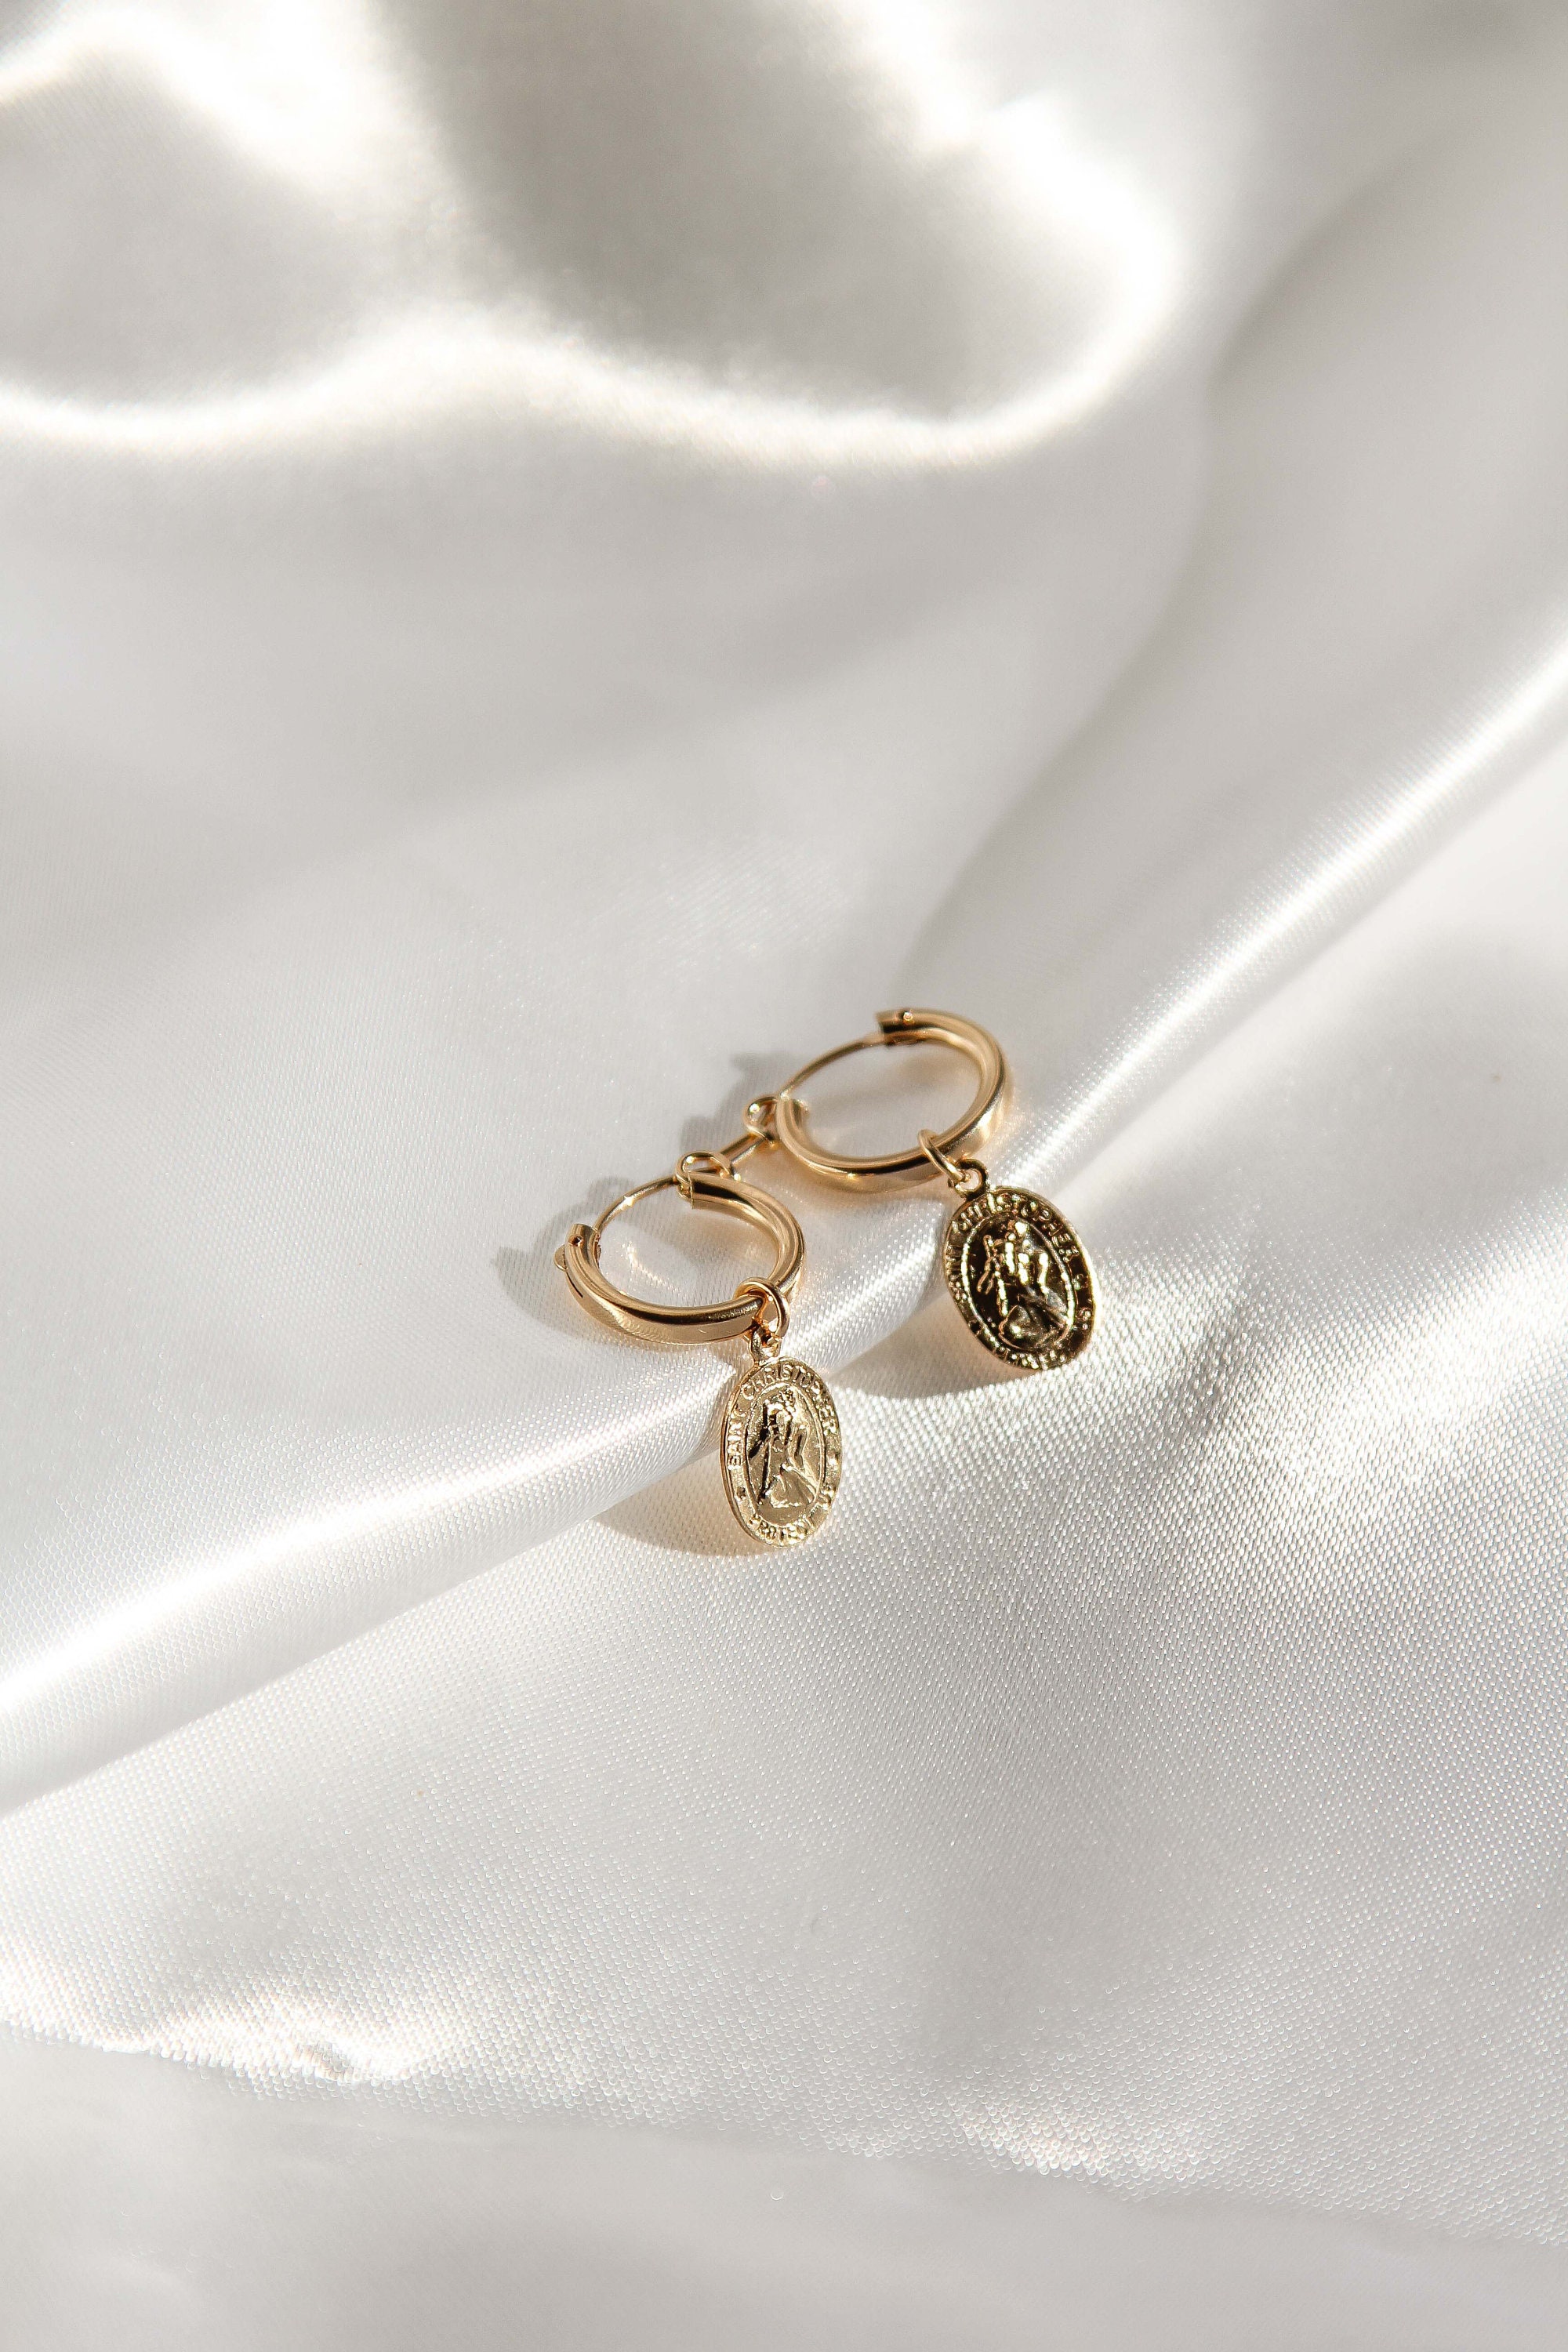 Chrissy Medallion Hoops // 14k Gold-Filled Earrings for | Etsy